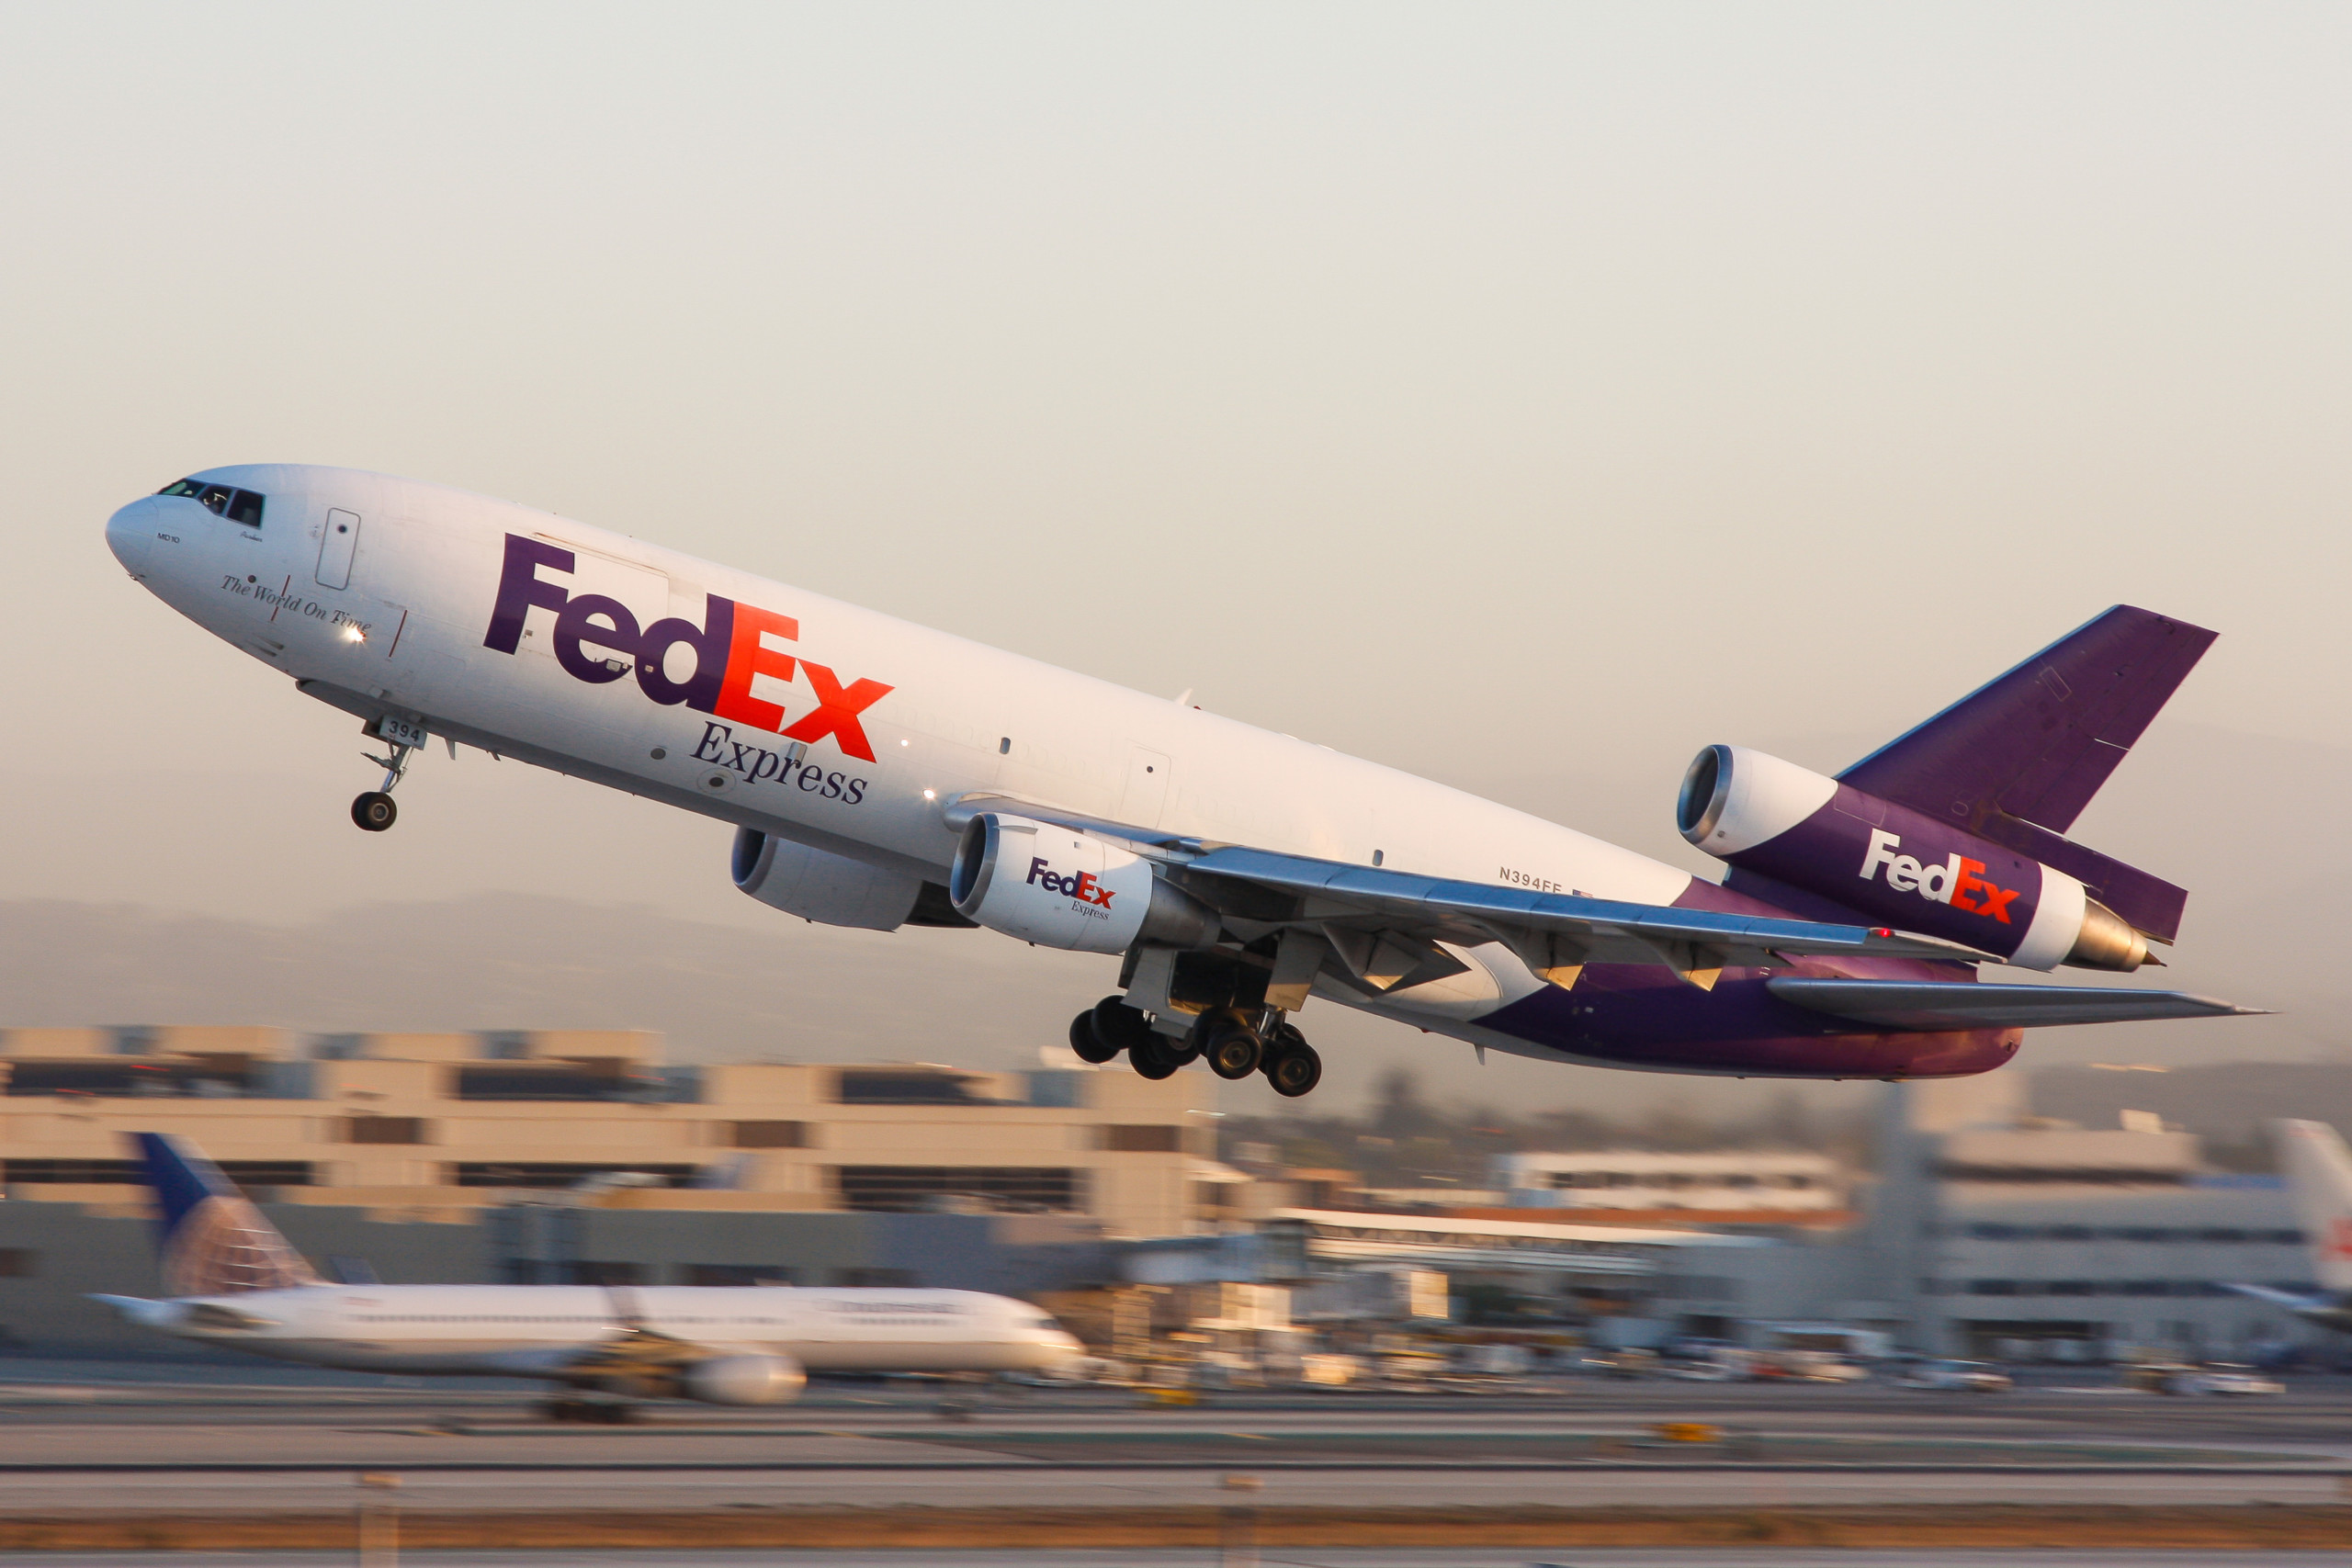 FedEx liefert solide Zahlen und glänzt vor allem durch effektive Kostenkontrolle